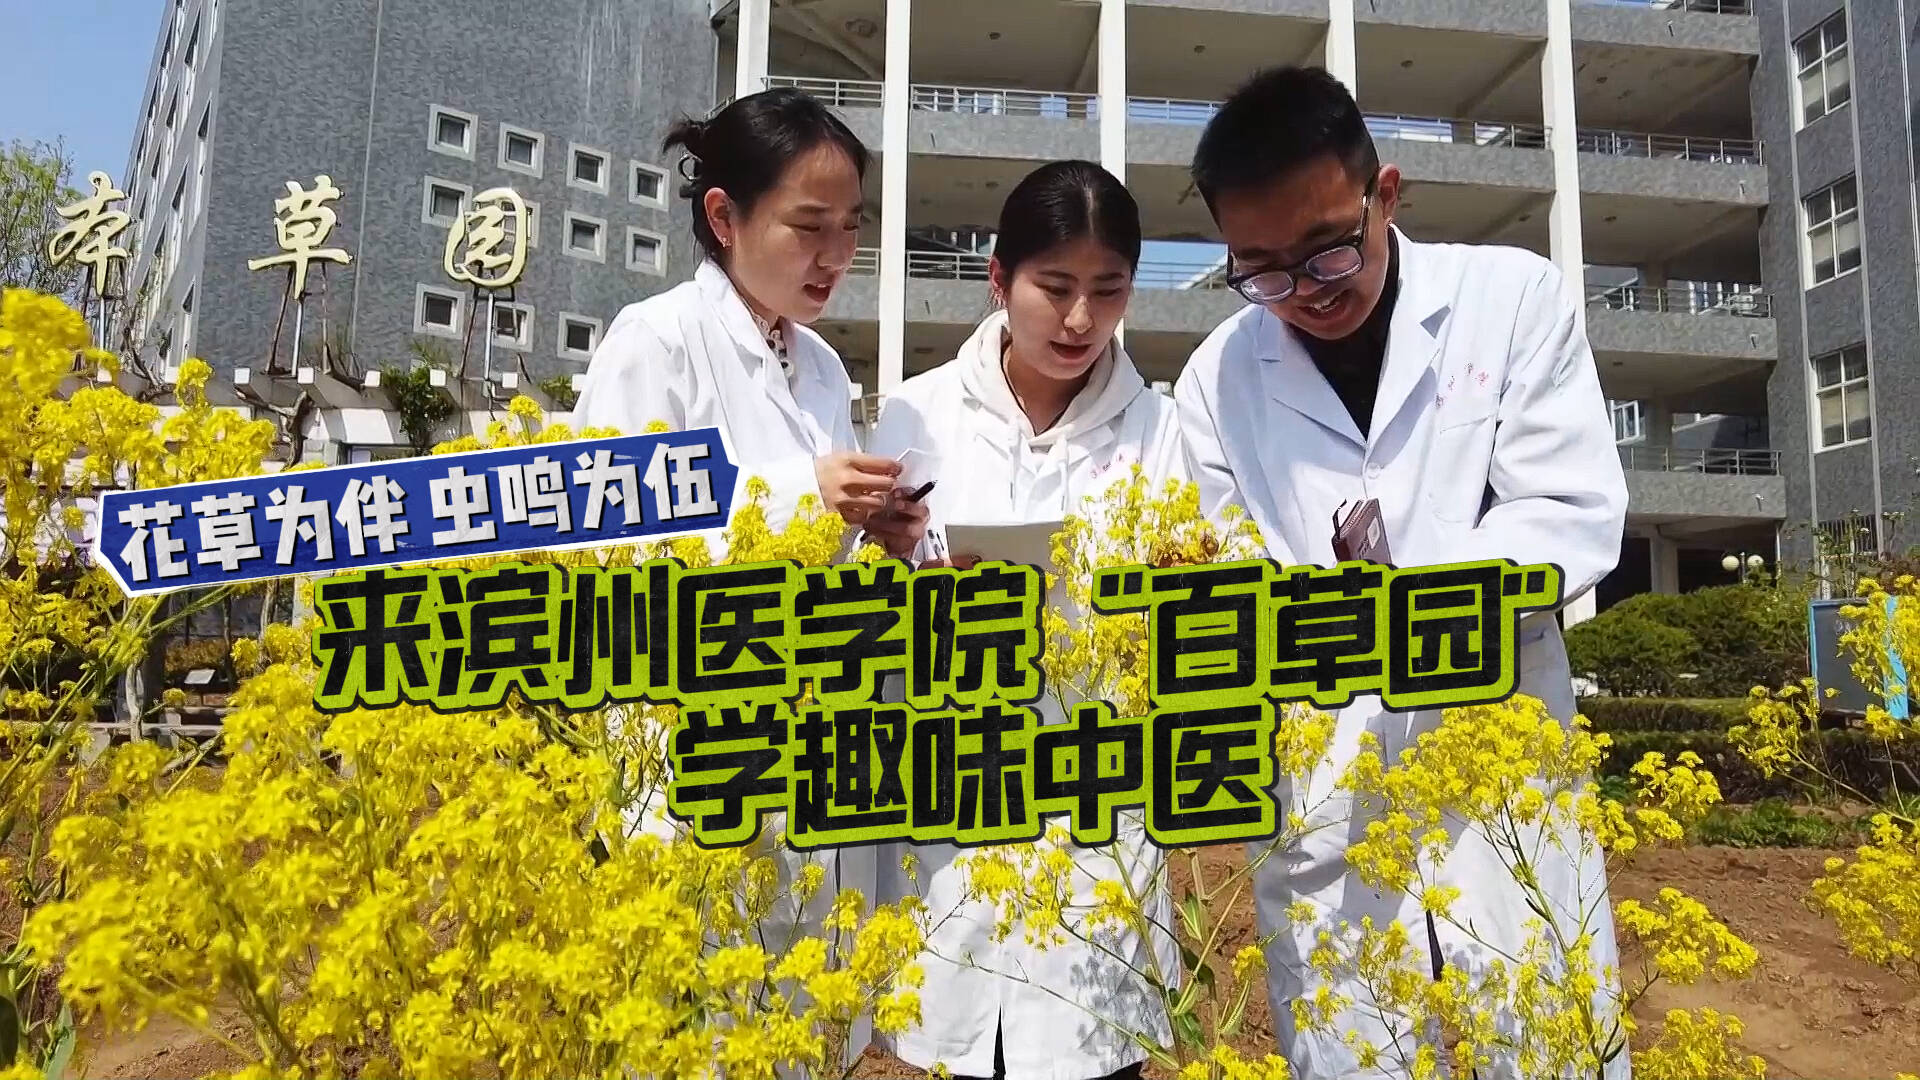 ”宝藏”专业在哪里丨花草为伴虫鸣为伍 来滨州医学院”百草园”学趣味中医